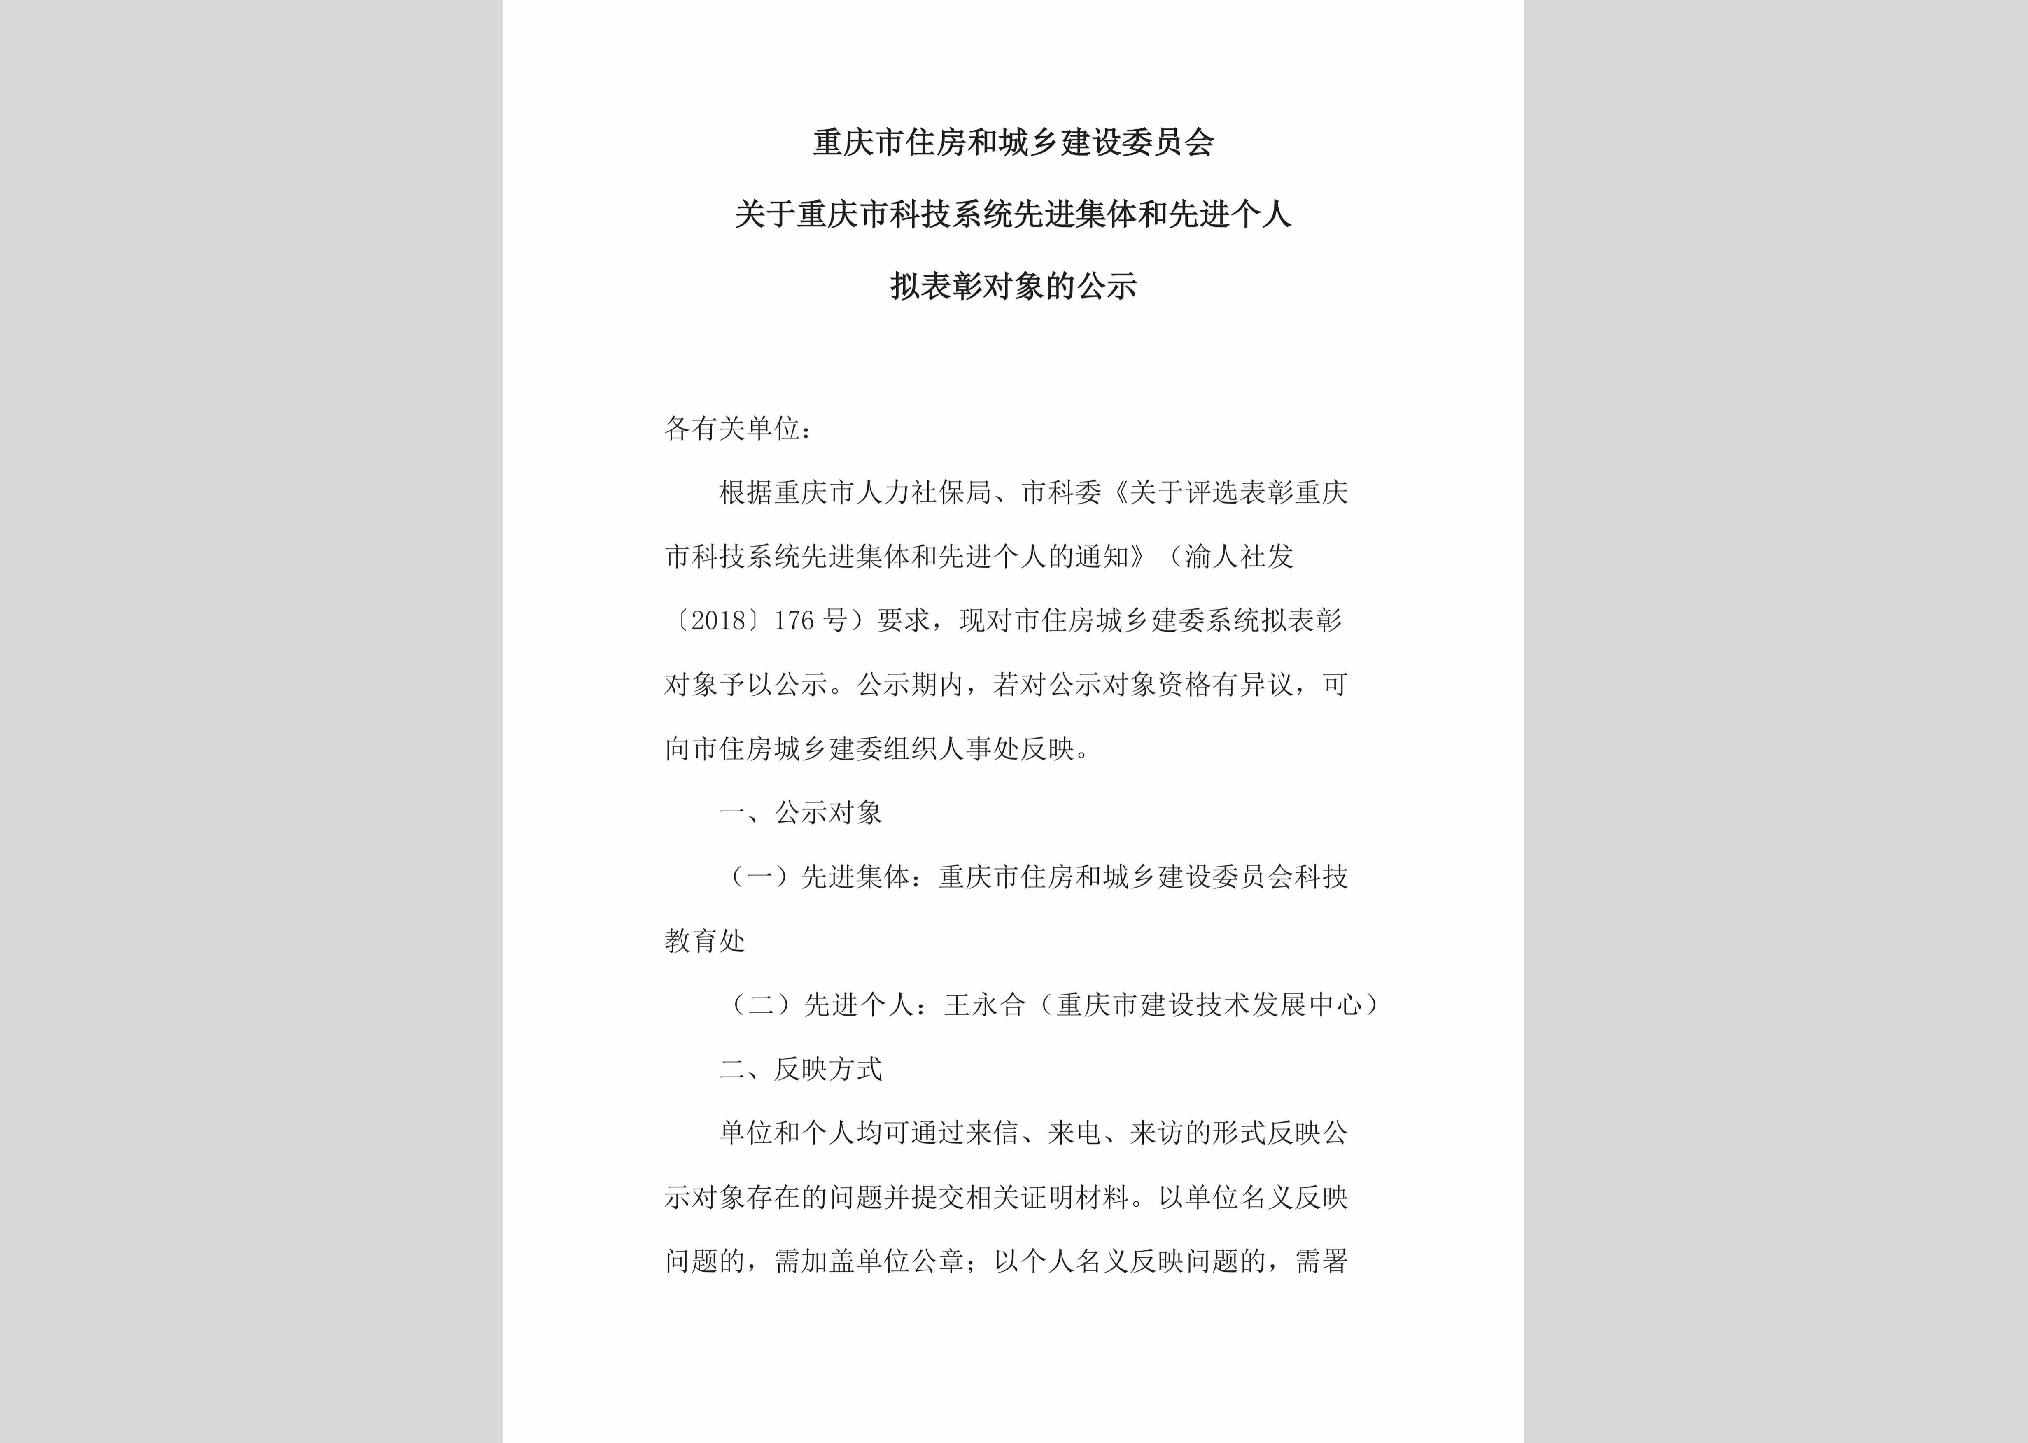 CQ-KJXTXJJT-2018：关于重庆市科技系统先进集体和先进个人拟表彰对象的公示